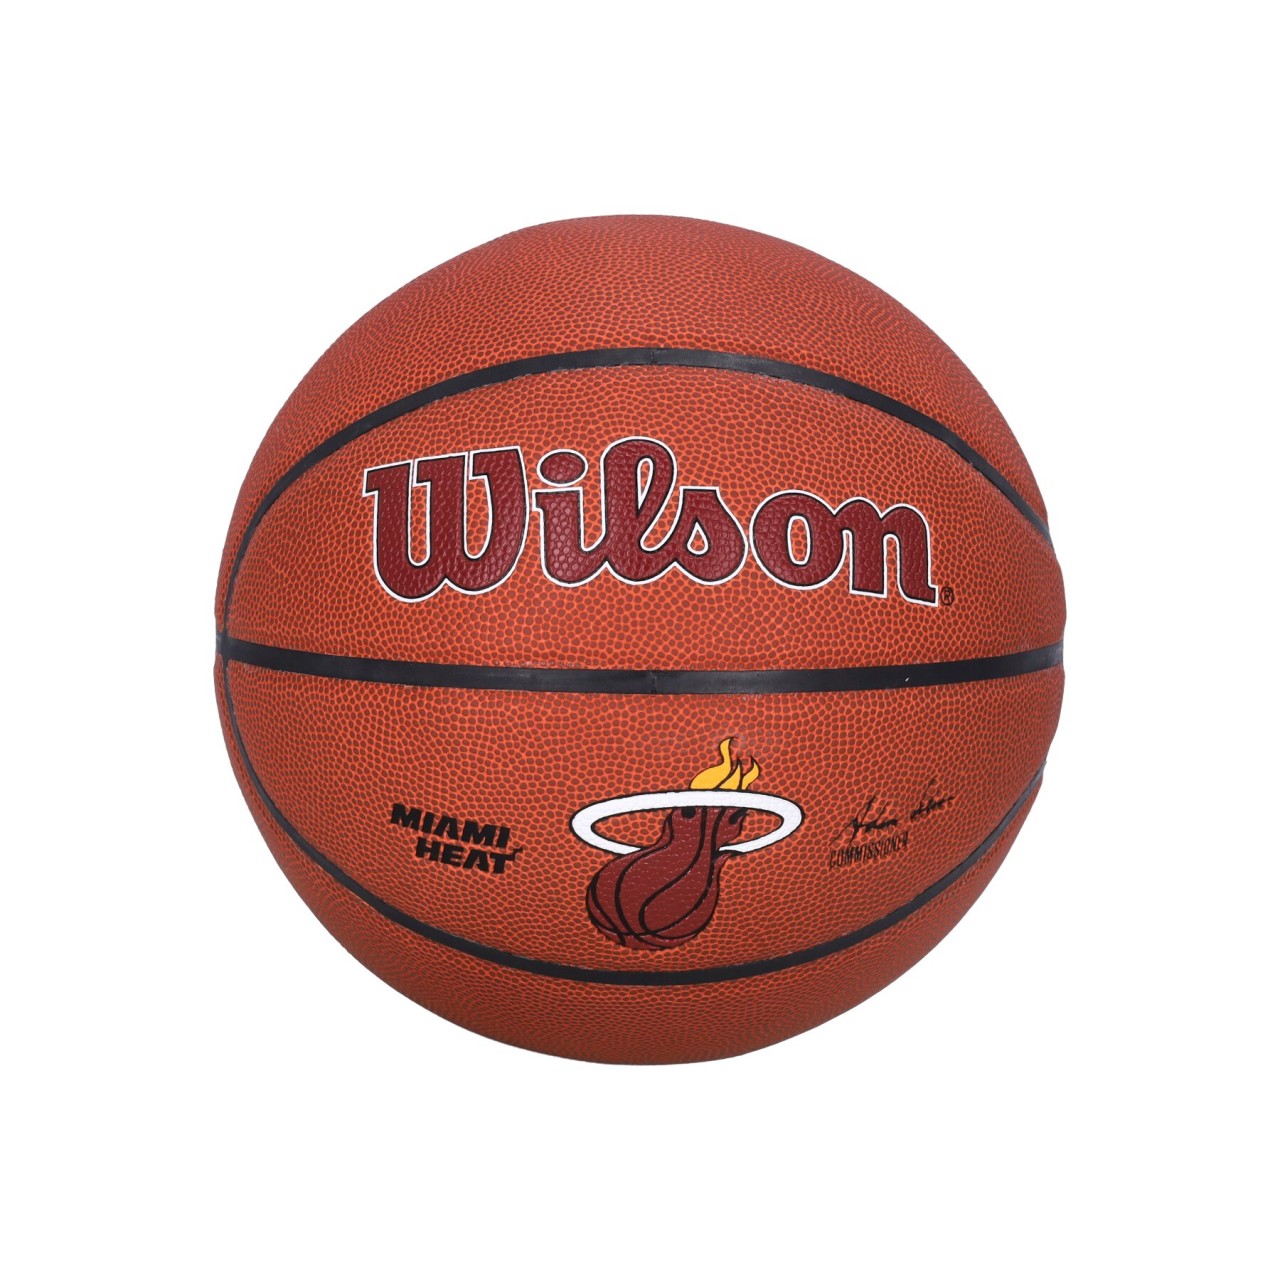 WILSON TEAM NBA TEAM ALLIANCE BASKETBALL SIZE 7 MIAHEA WTB3100XBMIA